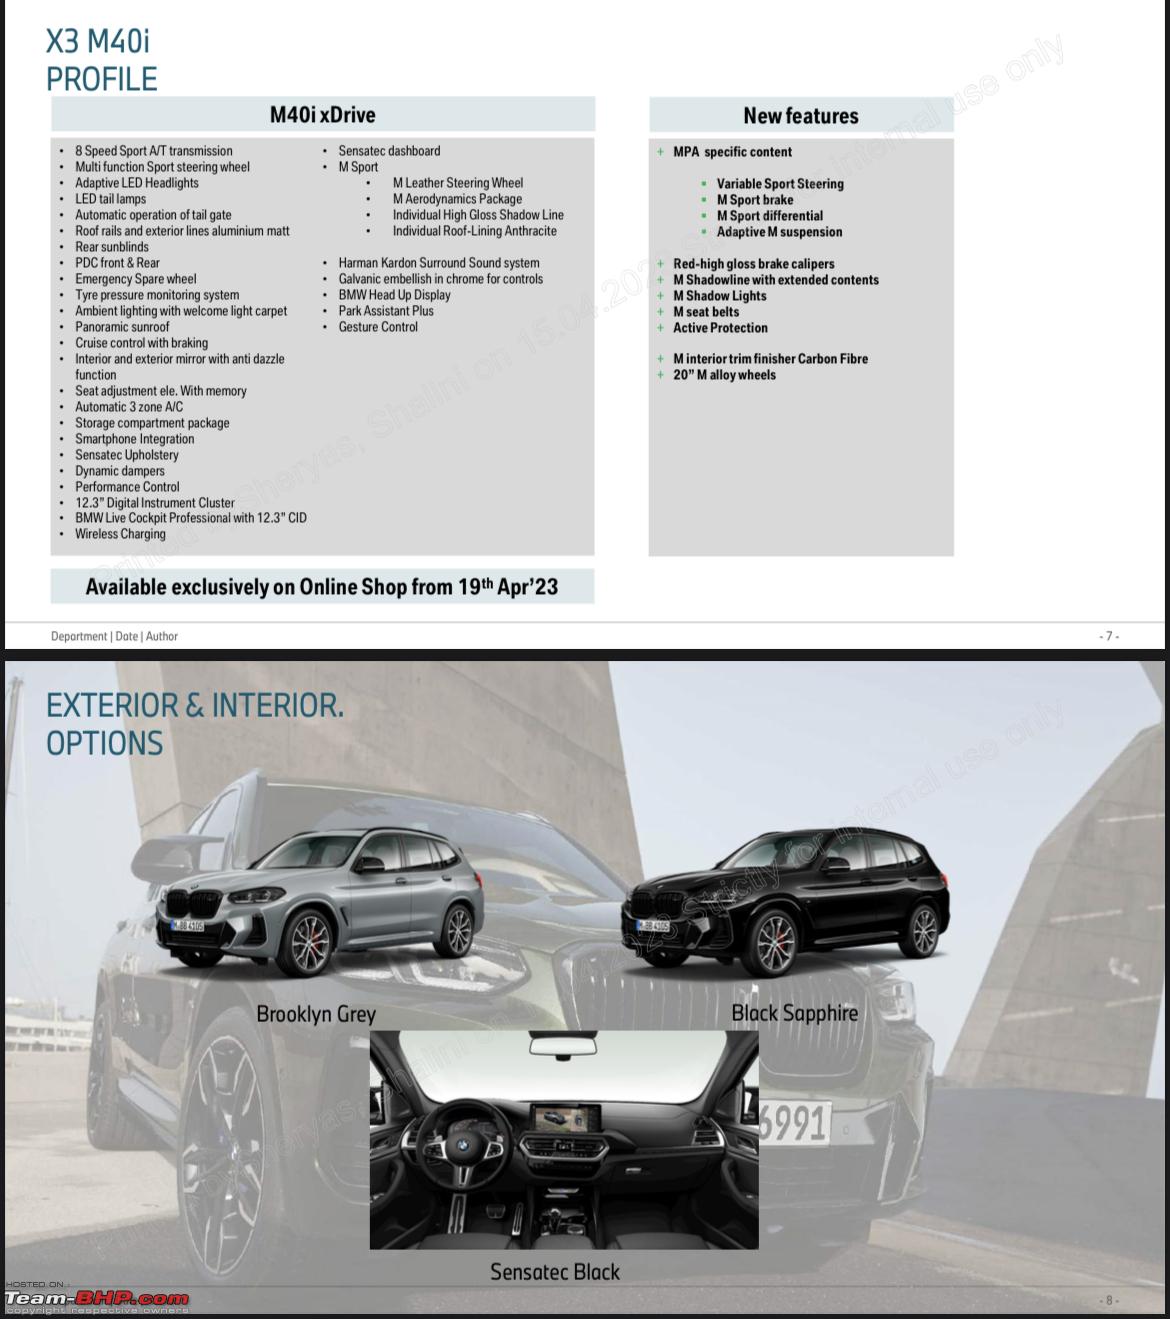 BMW X3 vs BMW X5 car comparison REVIEW - which BMW SUV to buy? X5